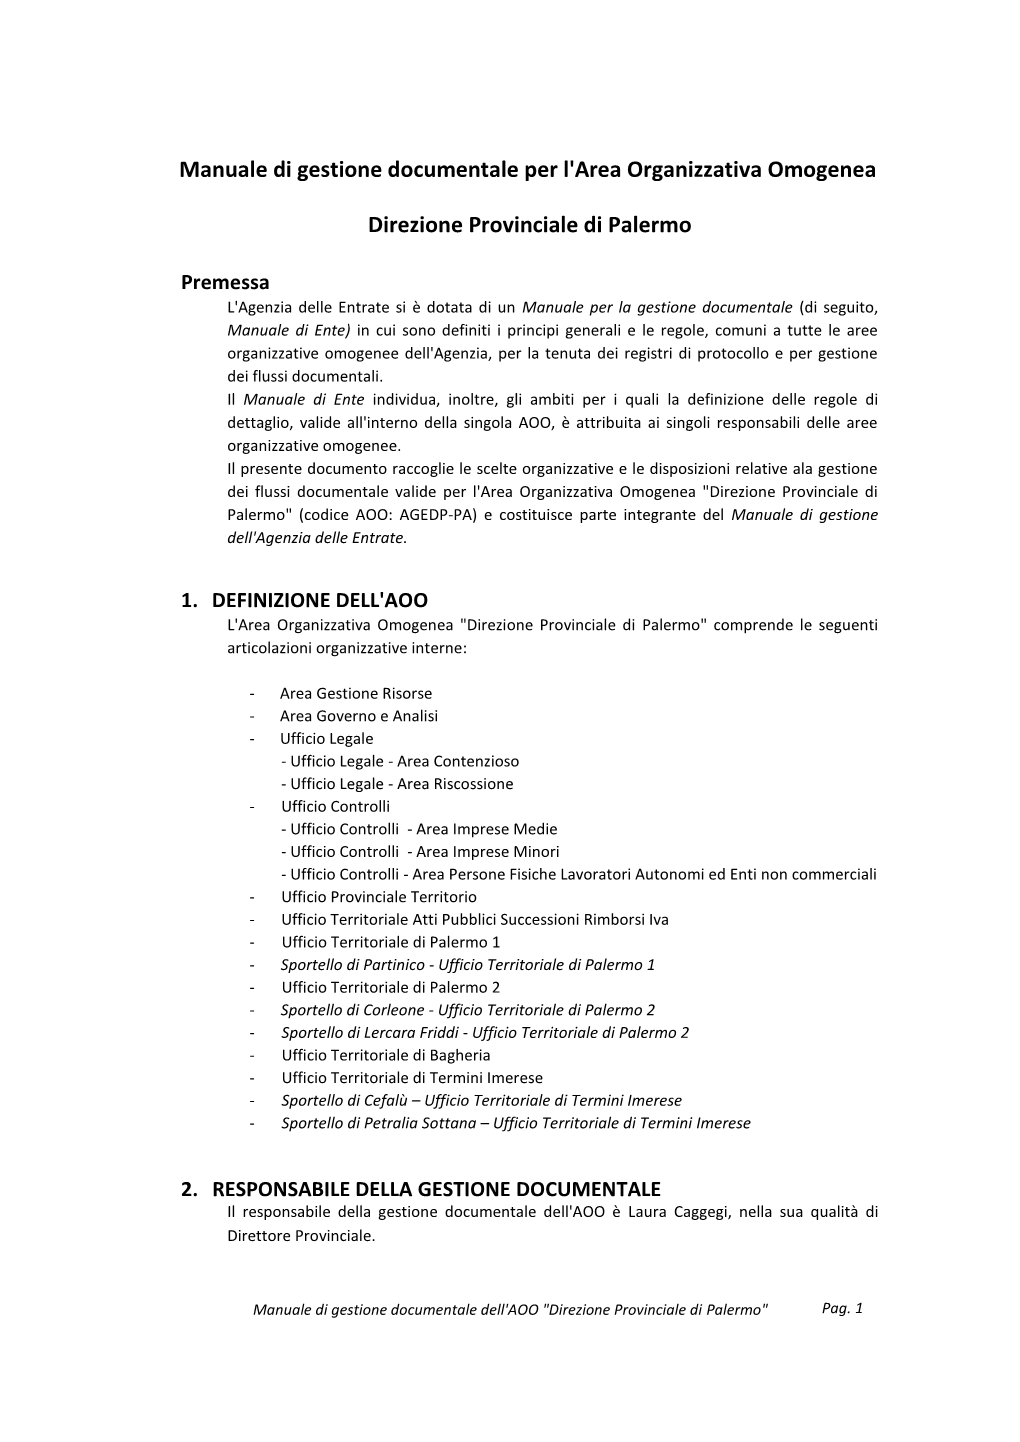 Manuale Di Gestione Documentale Per L'area Organizzativa Omogenea Direzione Provinciale Di Palermo